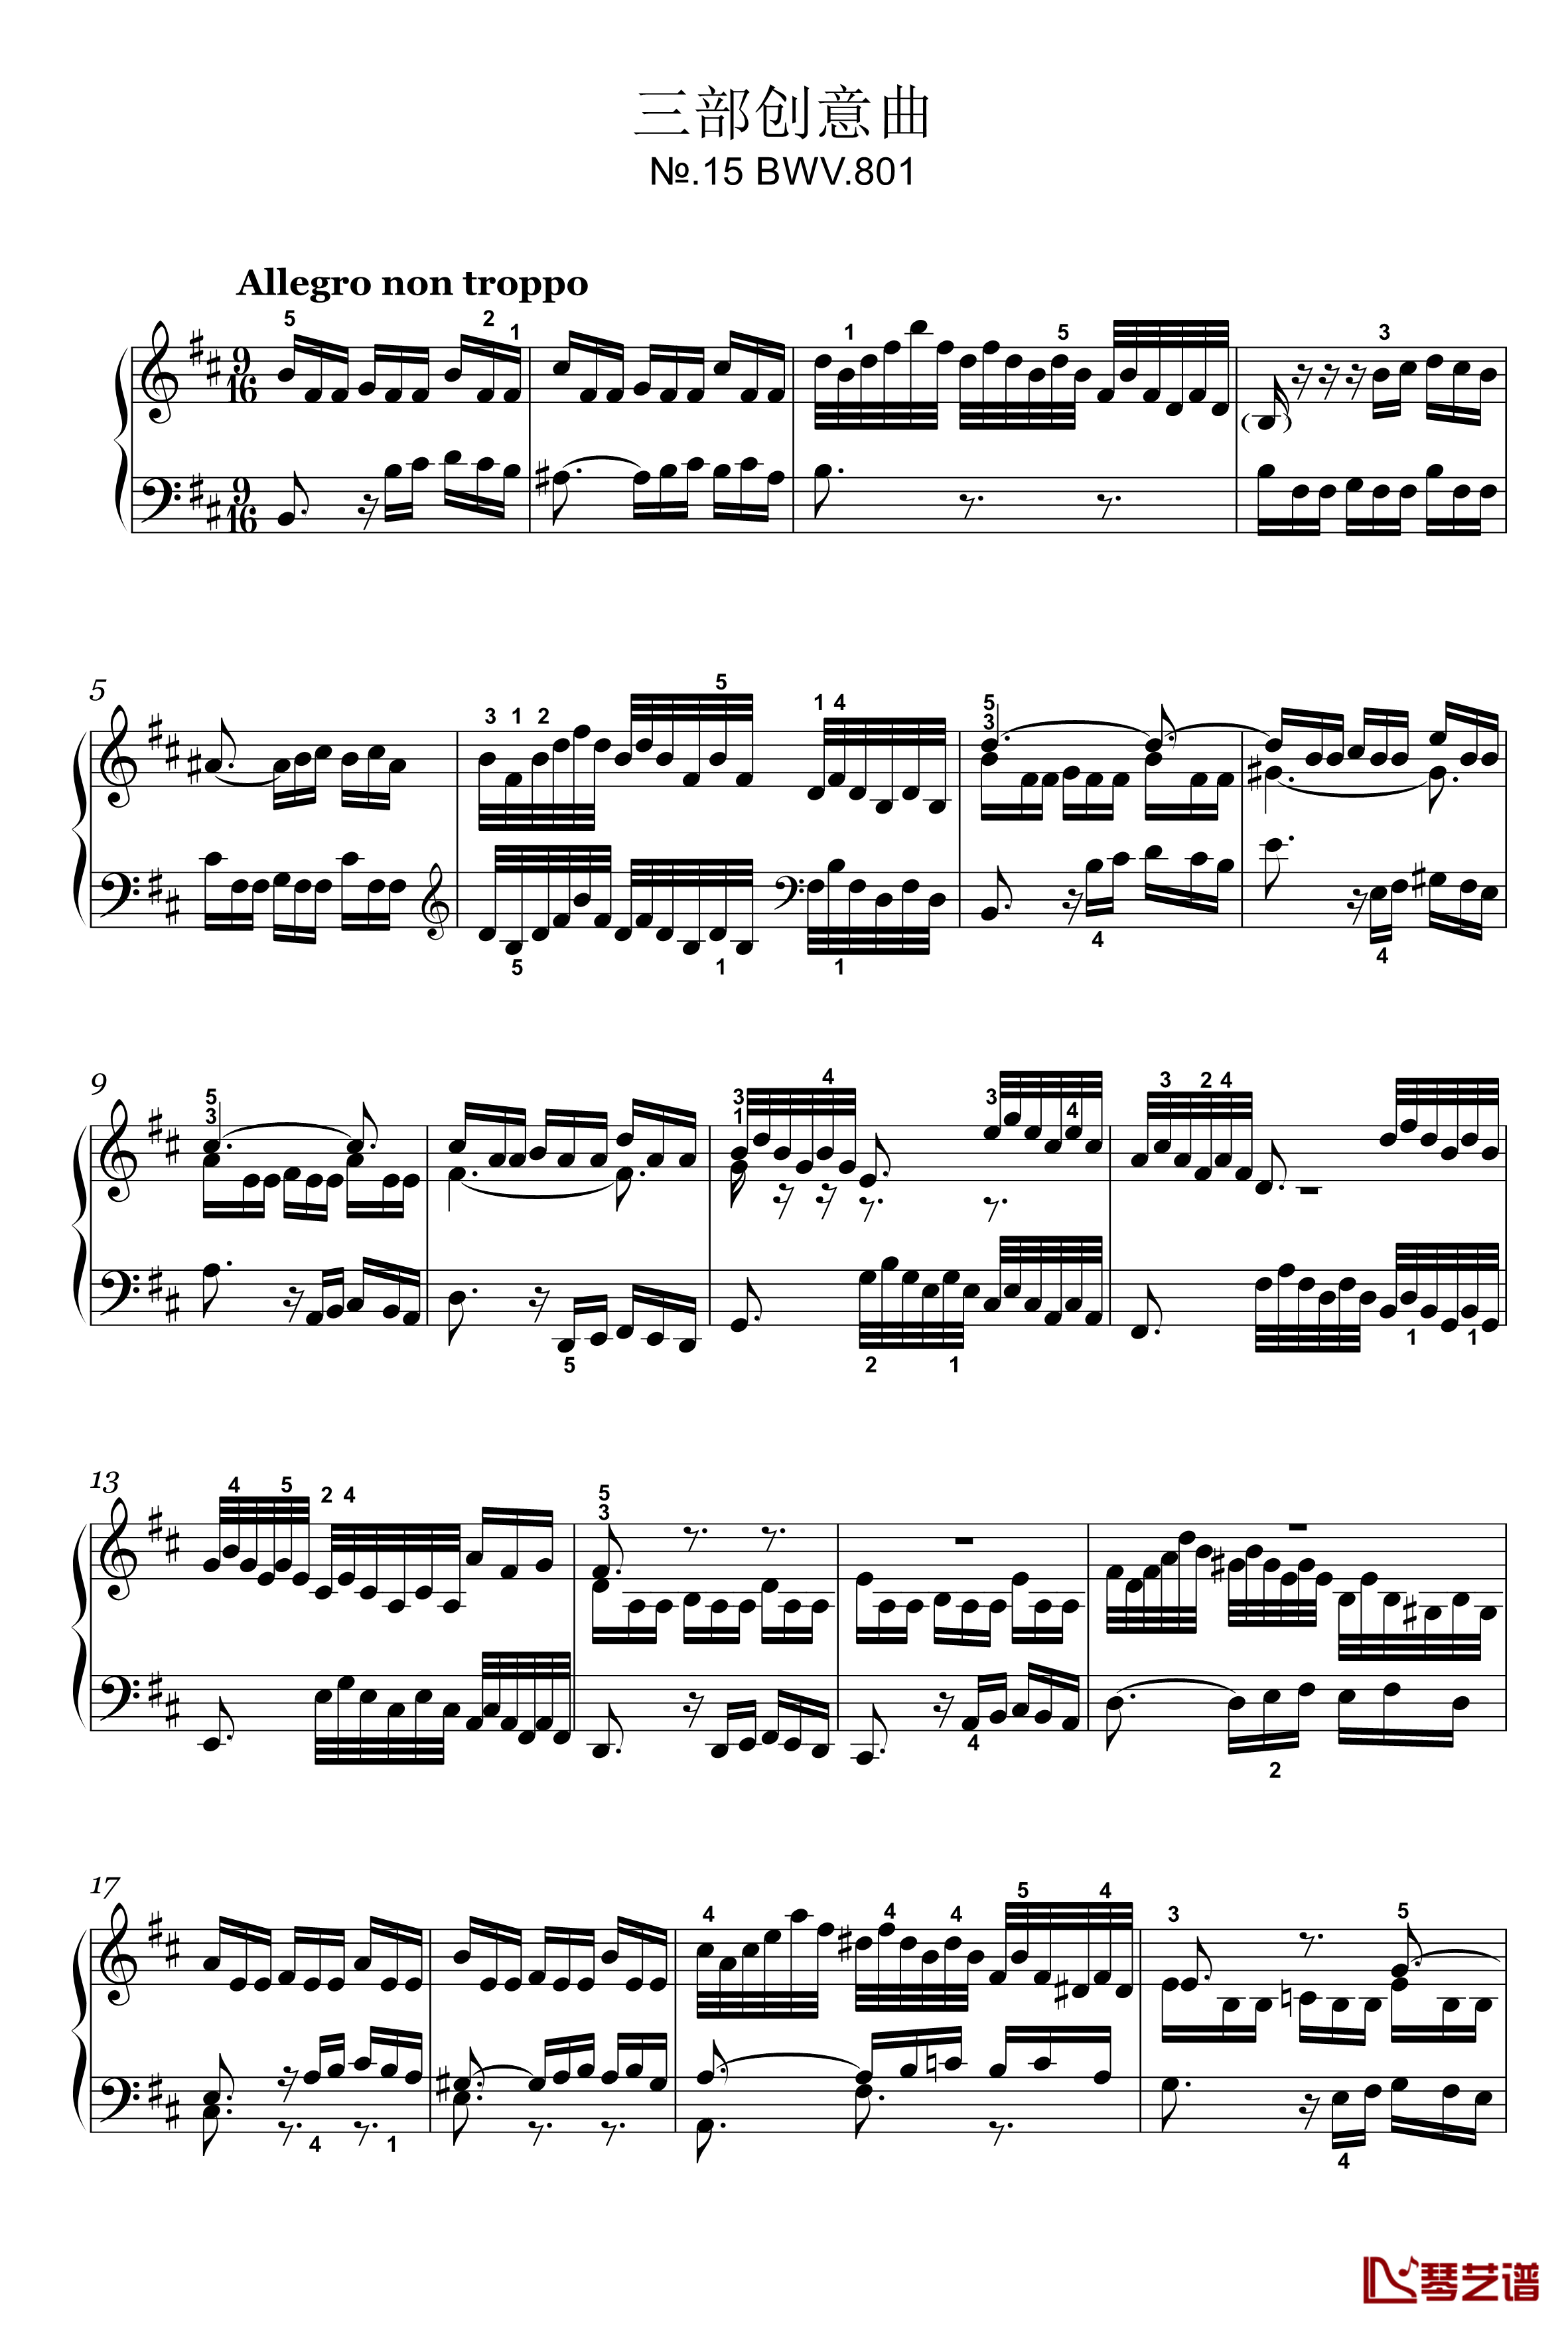 三部创意曲钢琴谱-15-BWV-801-巴赫1